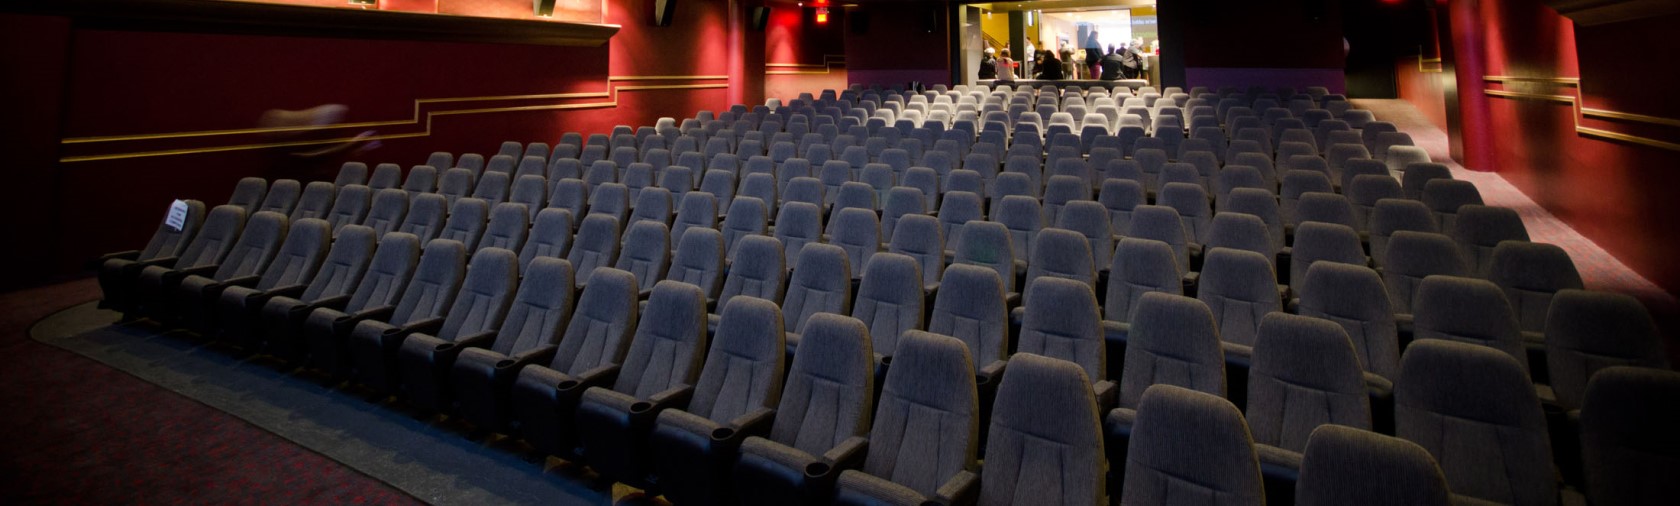 Empty Cinema seats